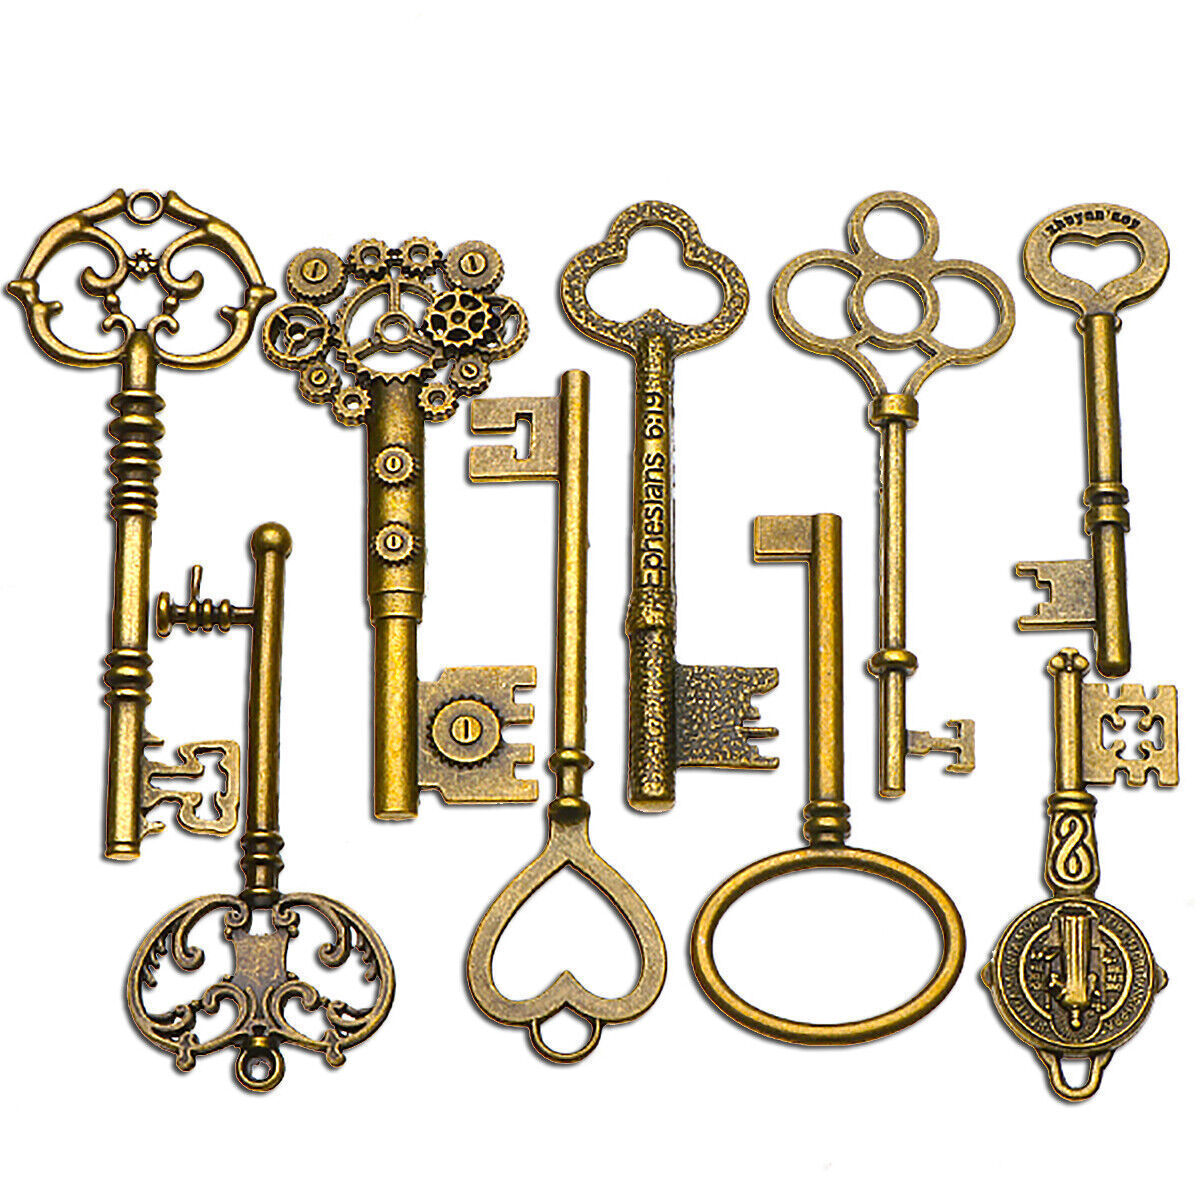 9X Antique Vintage Keys BIG Large old Brass Skeleton Lot Cabinet Barrel Lock